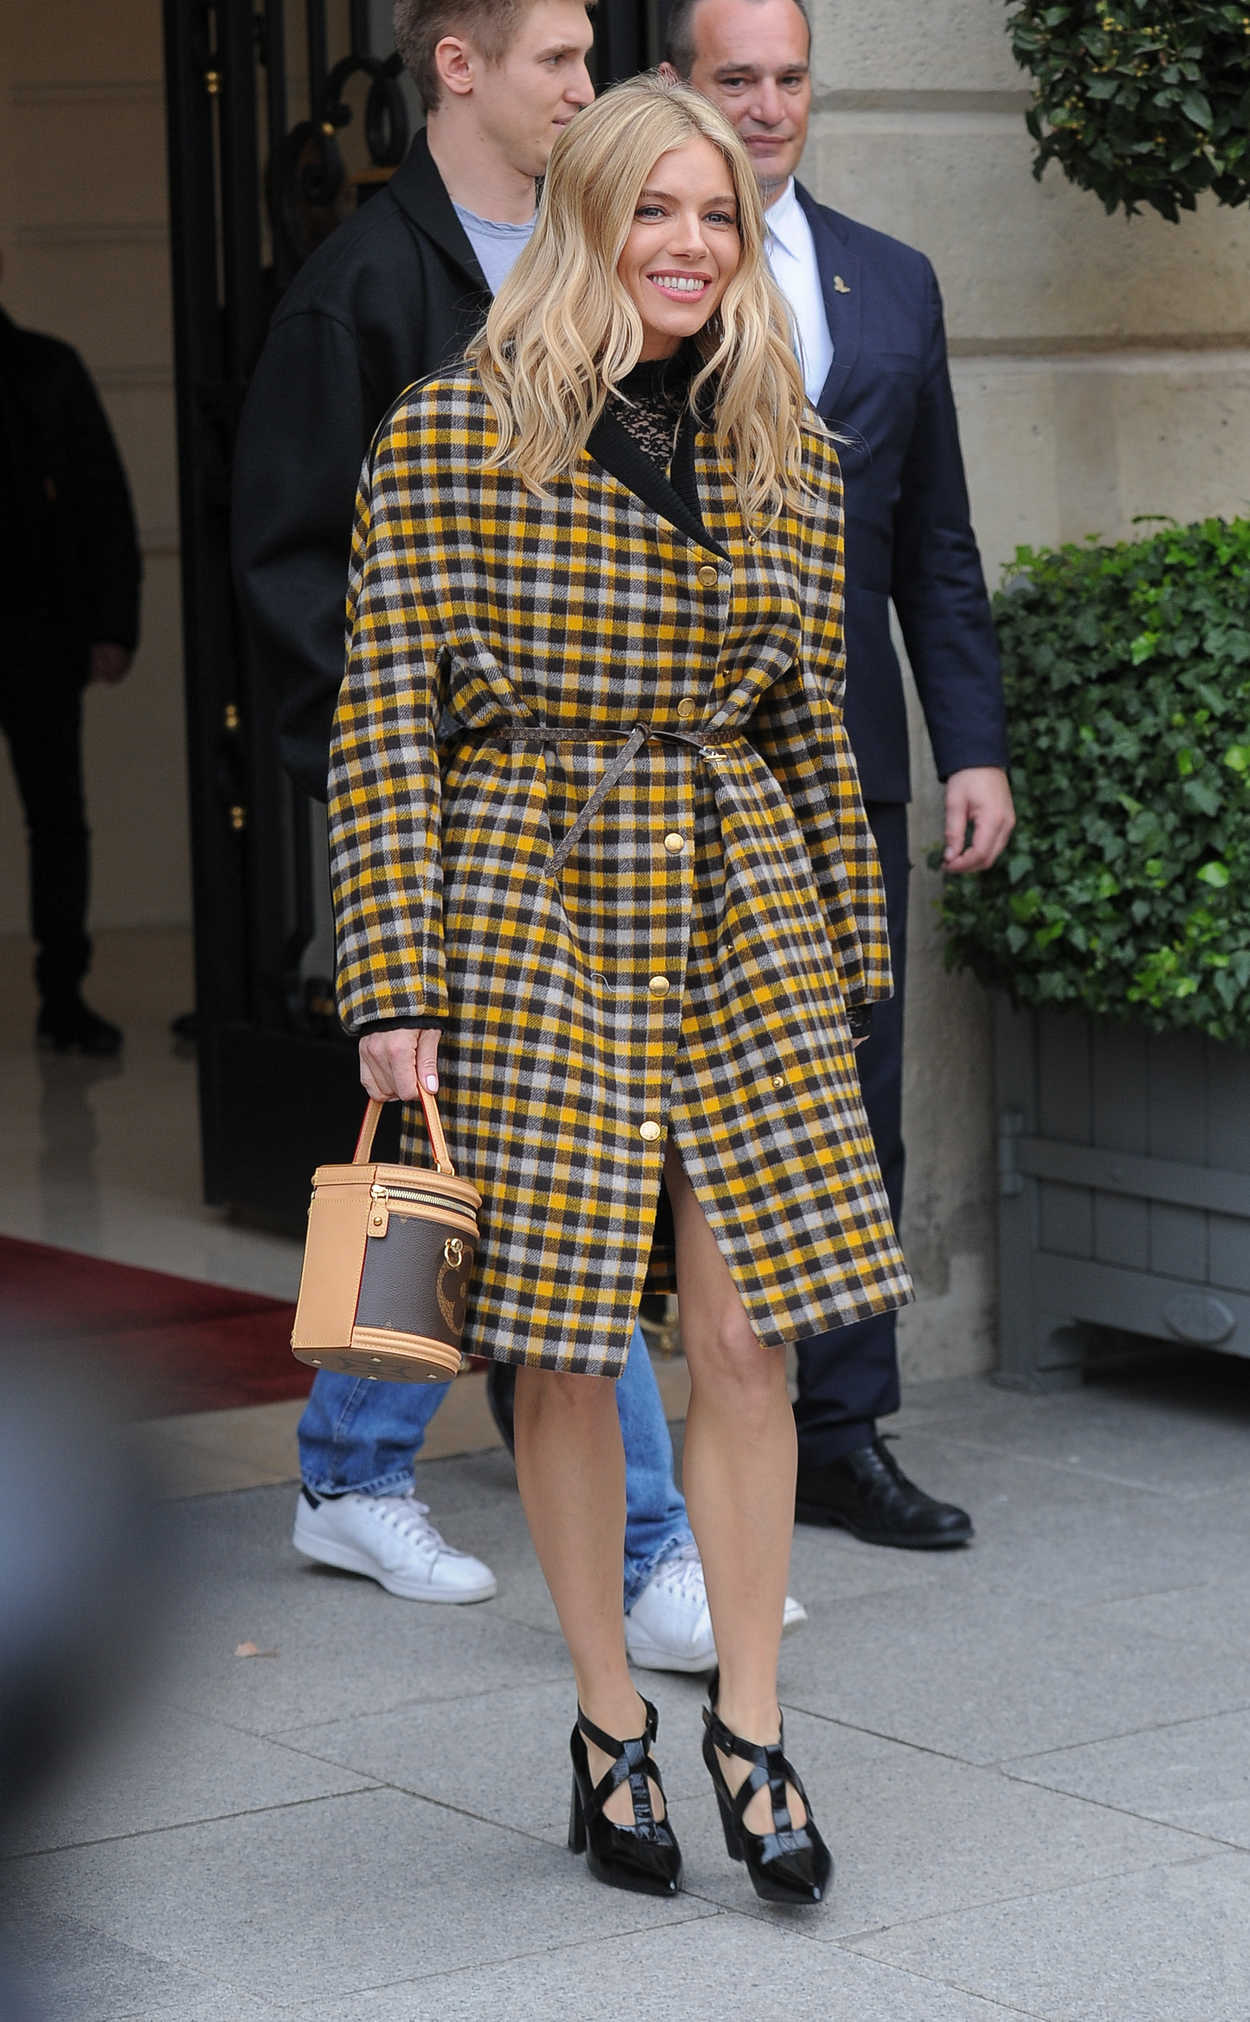 SIENNA MILLER at Louis Vuitton at Paris Fashion Week 03/05/2019